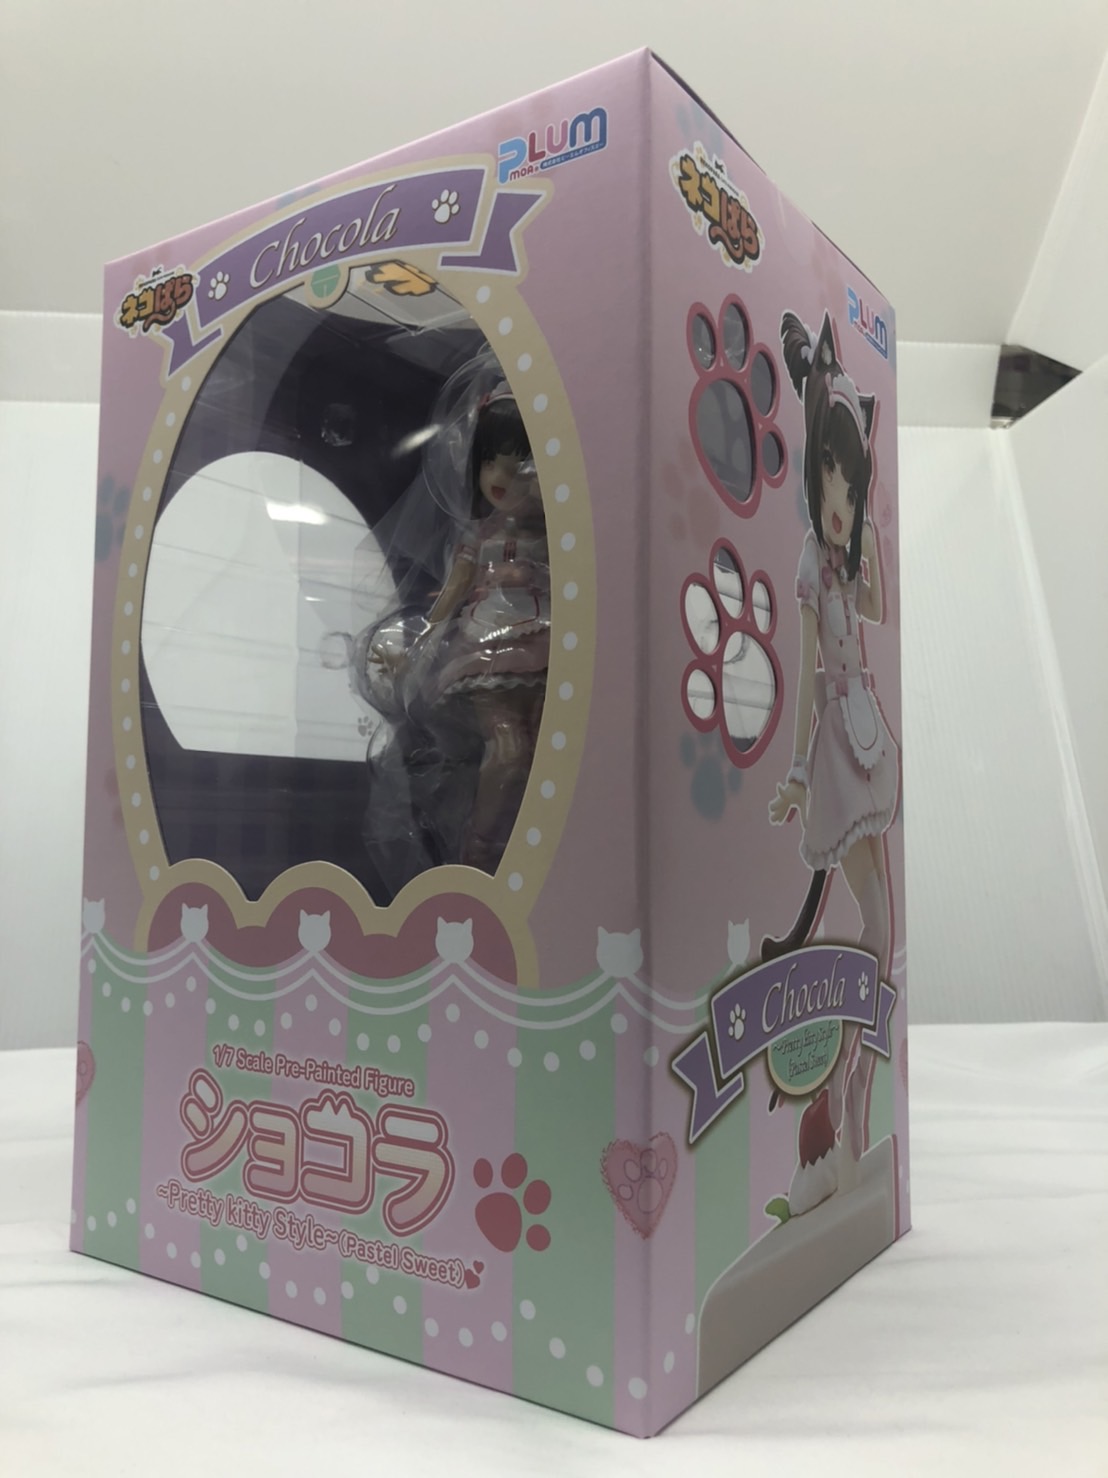 PLUM ショコラ～Pretty kitty Style～(Pastel Sweet) 1/7スケールフィギュア (ネコぱら)